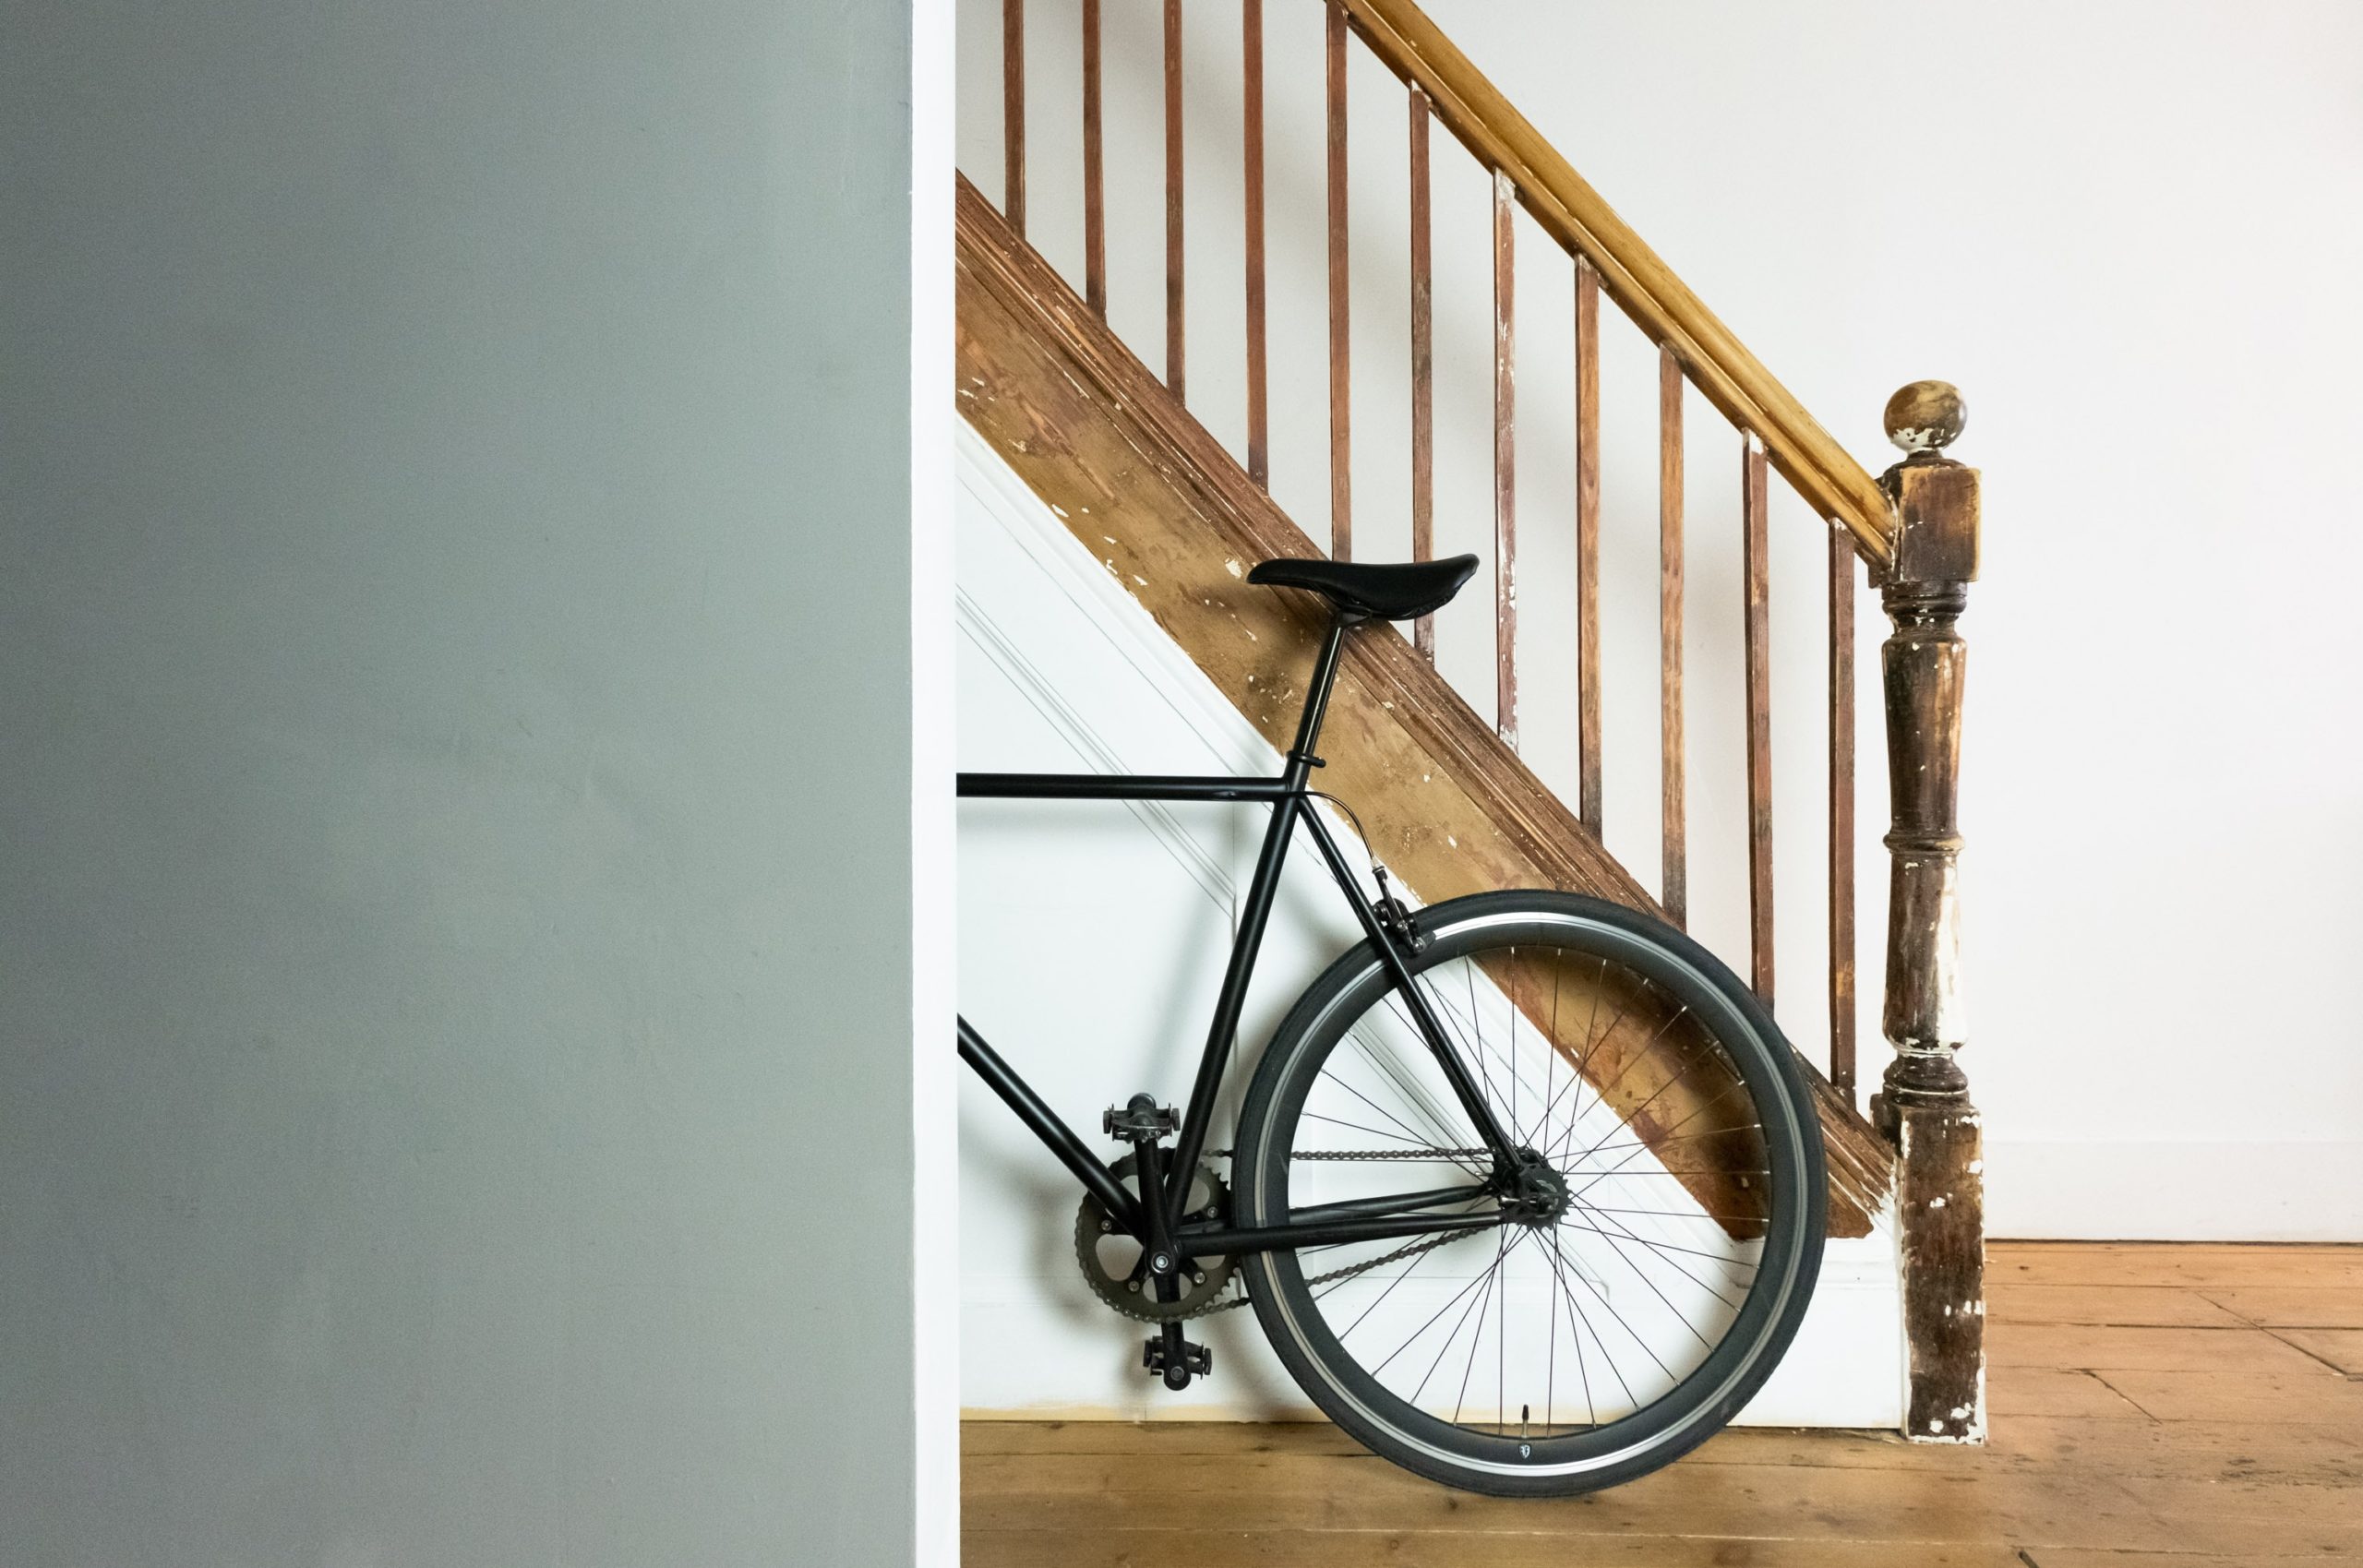 Tipy na uskladnenie bicykla v malom byte